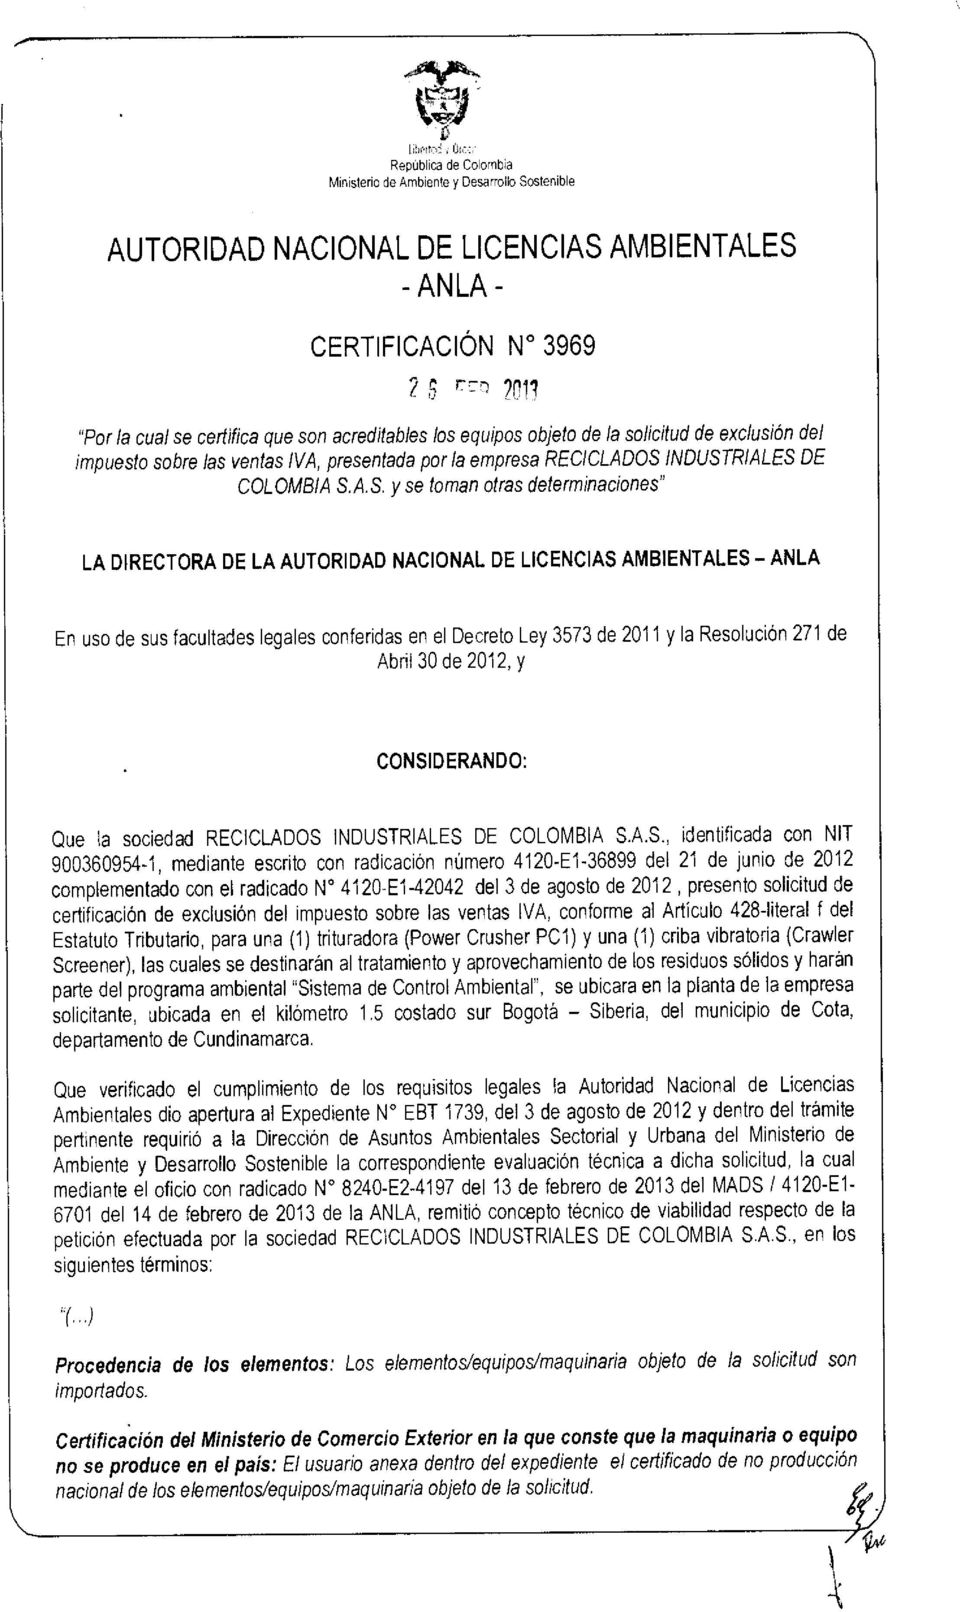 CONSIDERANDO: Que la sociedad RECICLADOS INDUSTRIALES DE COLOMBIA S.A.S., identificada con NIT 900360954-1, mediante escrito con radicación número 4120-E1-36899 del 21 de junio de 2012 complementado